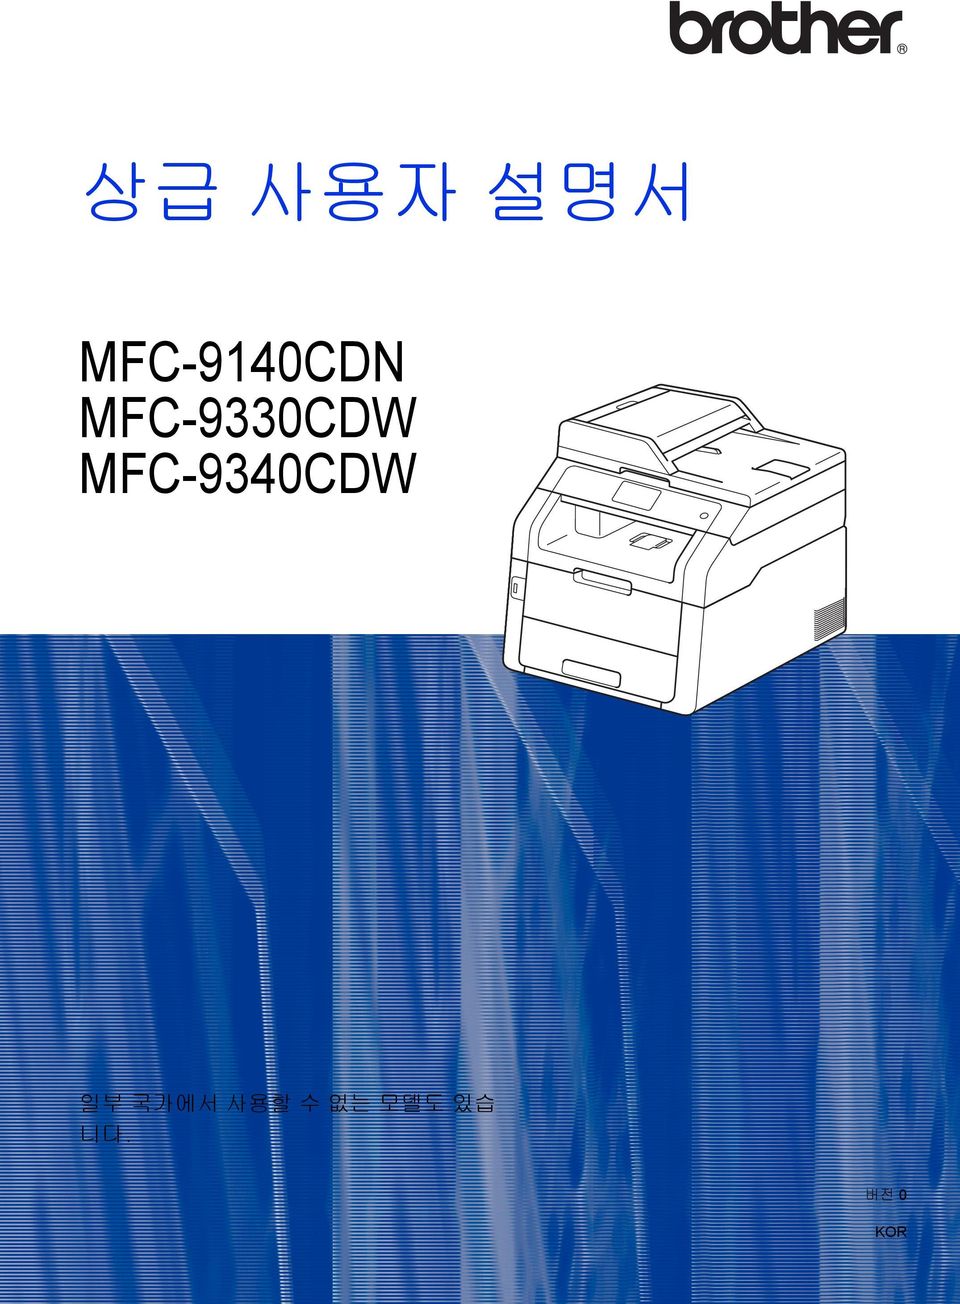 MFC-9330CDW